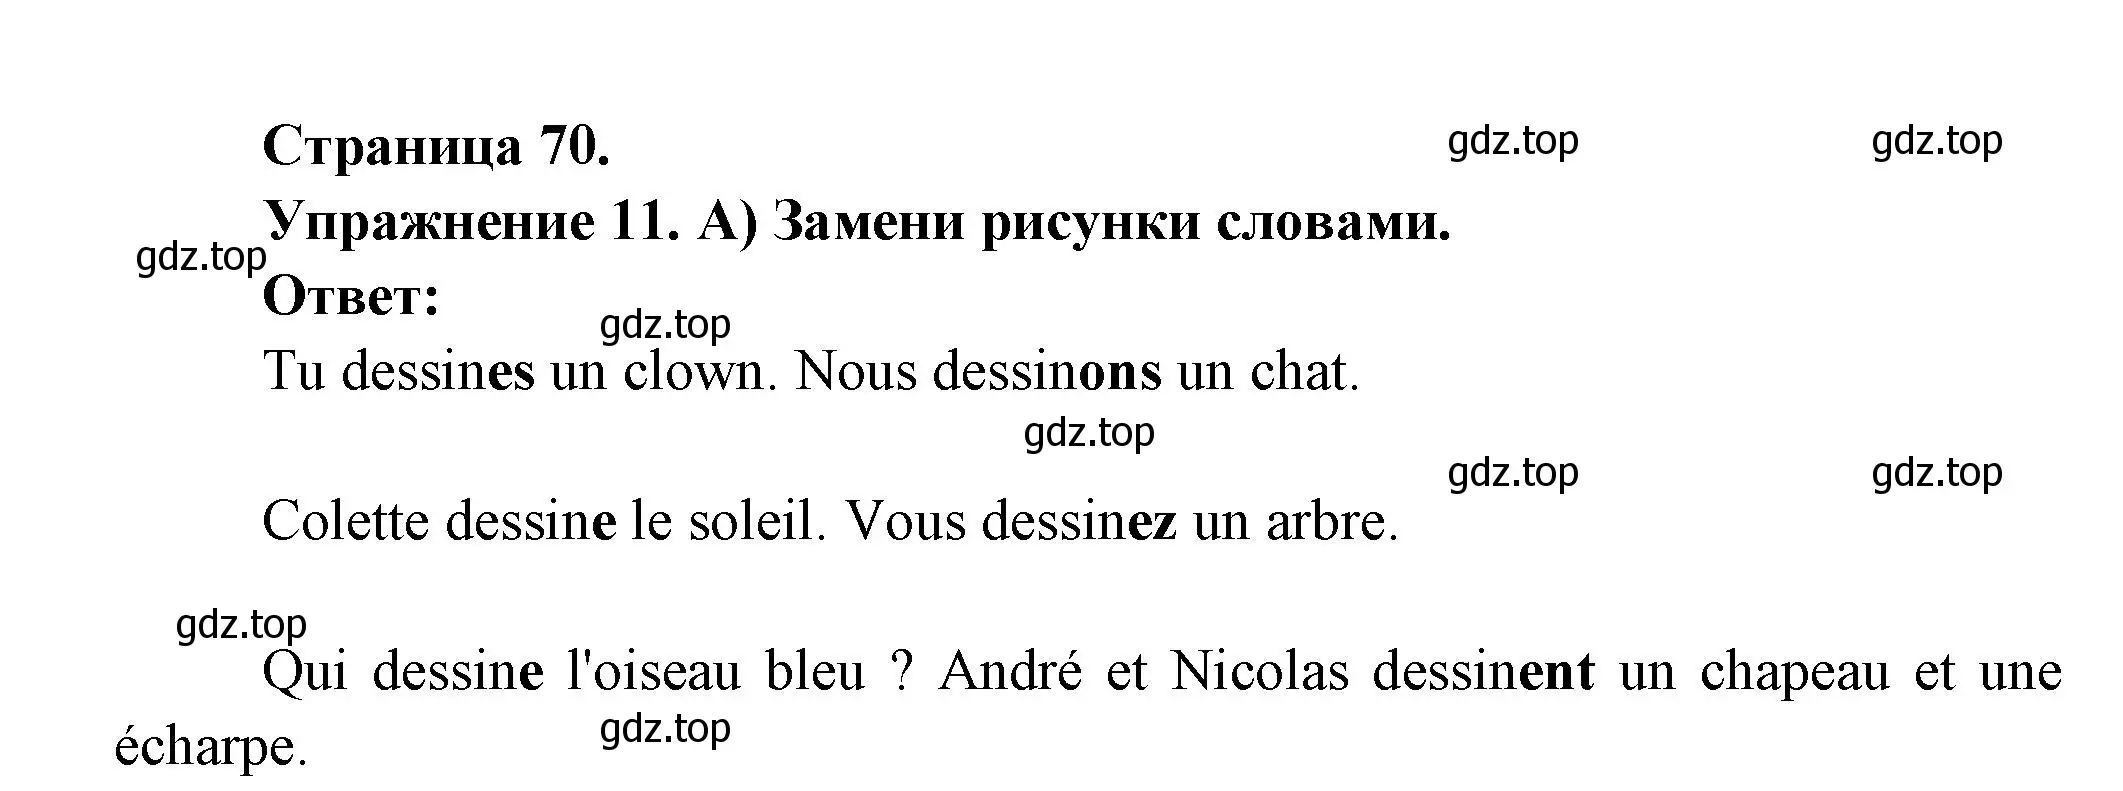 Решение номер 11 (страница 70) гдз по французскому языку 5 класс Береговская, Белосельская, учебник 1 часть